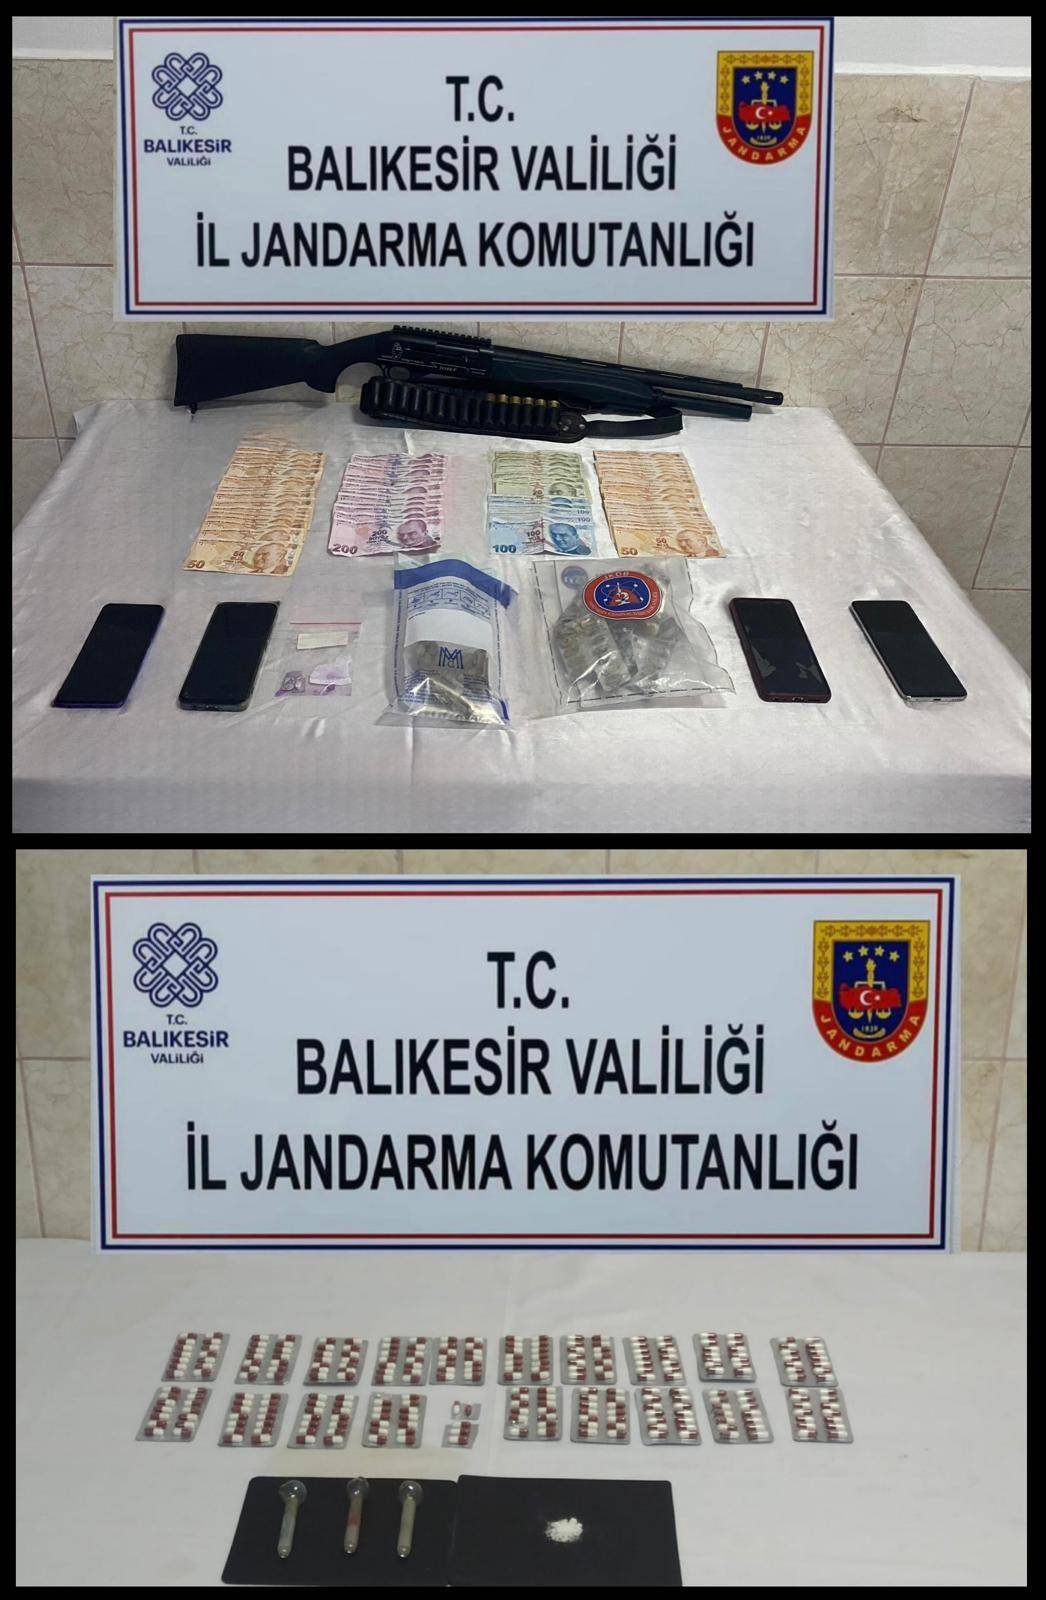 Balıkesir'de Uyuşturucu Operasyonu: 7 Şüpheli Yakalandı, Çok Sayıda Uyuşturucu Ele Geçirildi